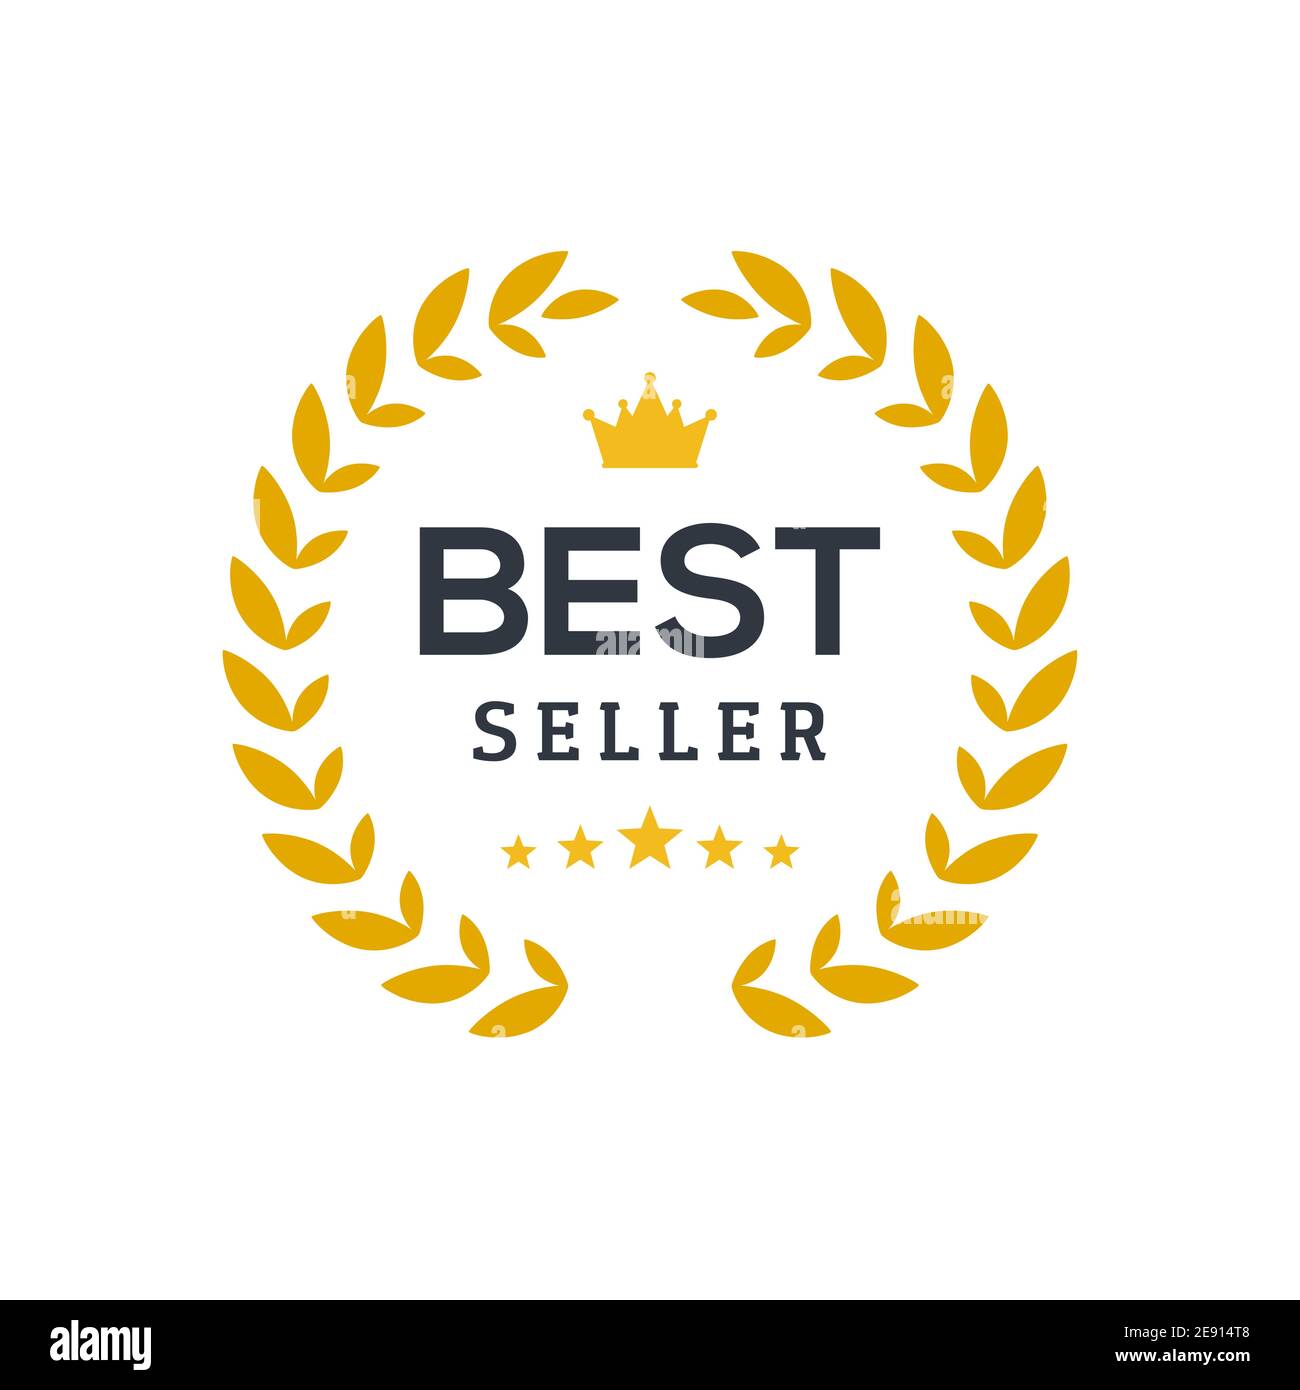 https://c8.alamy.com/comp/2E914T8/best-seller-ceremony-award-laurel-winner-best-seller-wreath-gold-logo-symbol-2E914T8.jpg